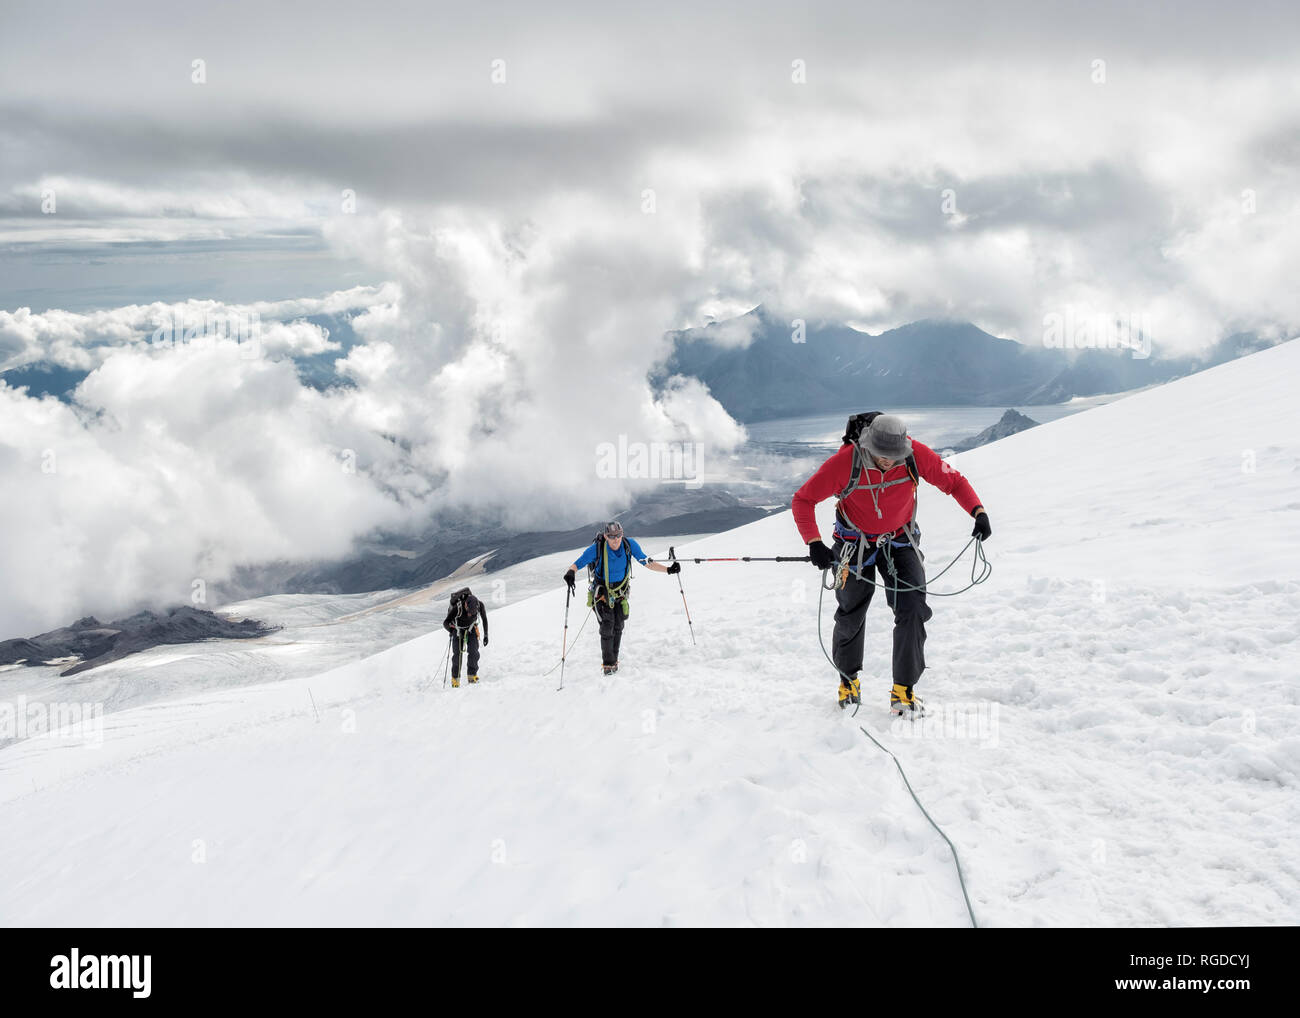 Russia, Upper Baksan Valley, Caucasus, Mountaineers ascending Mount Elbrus Stock Photo